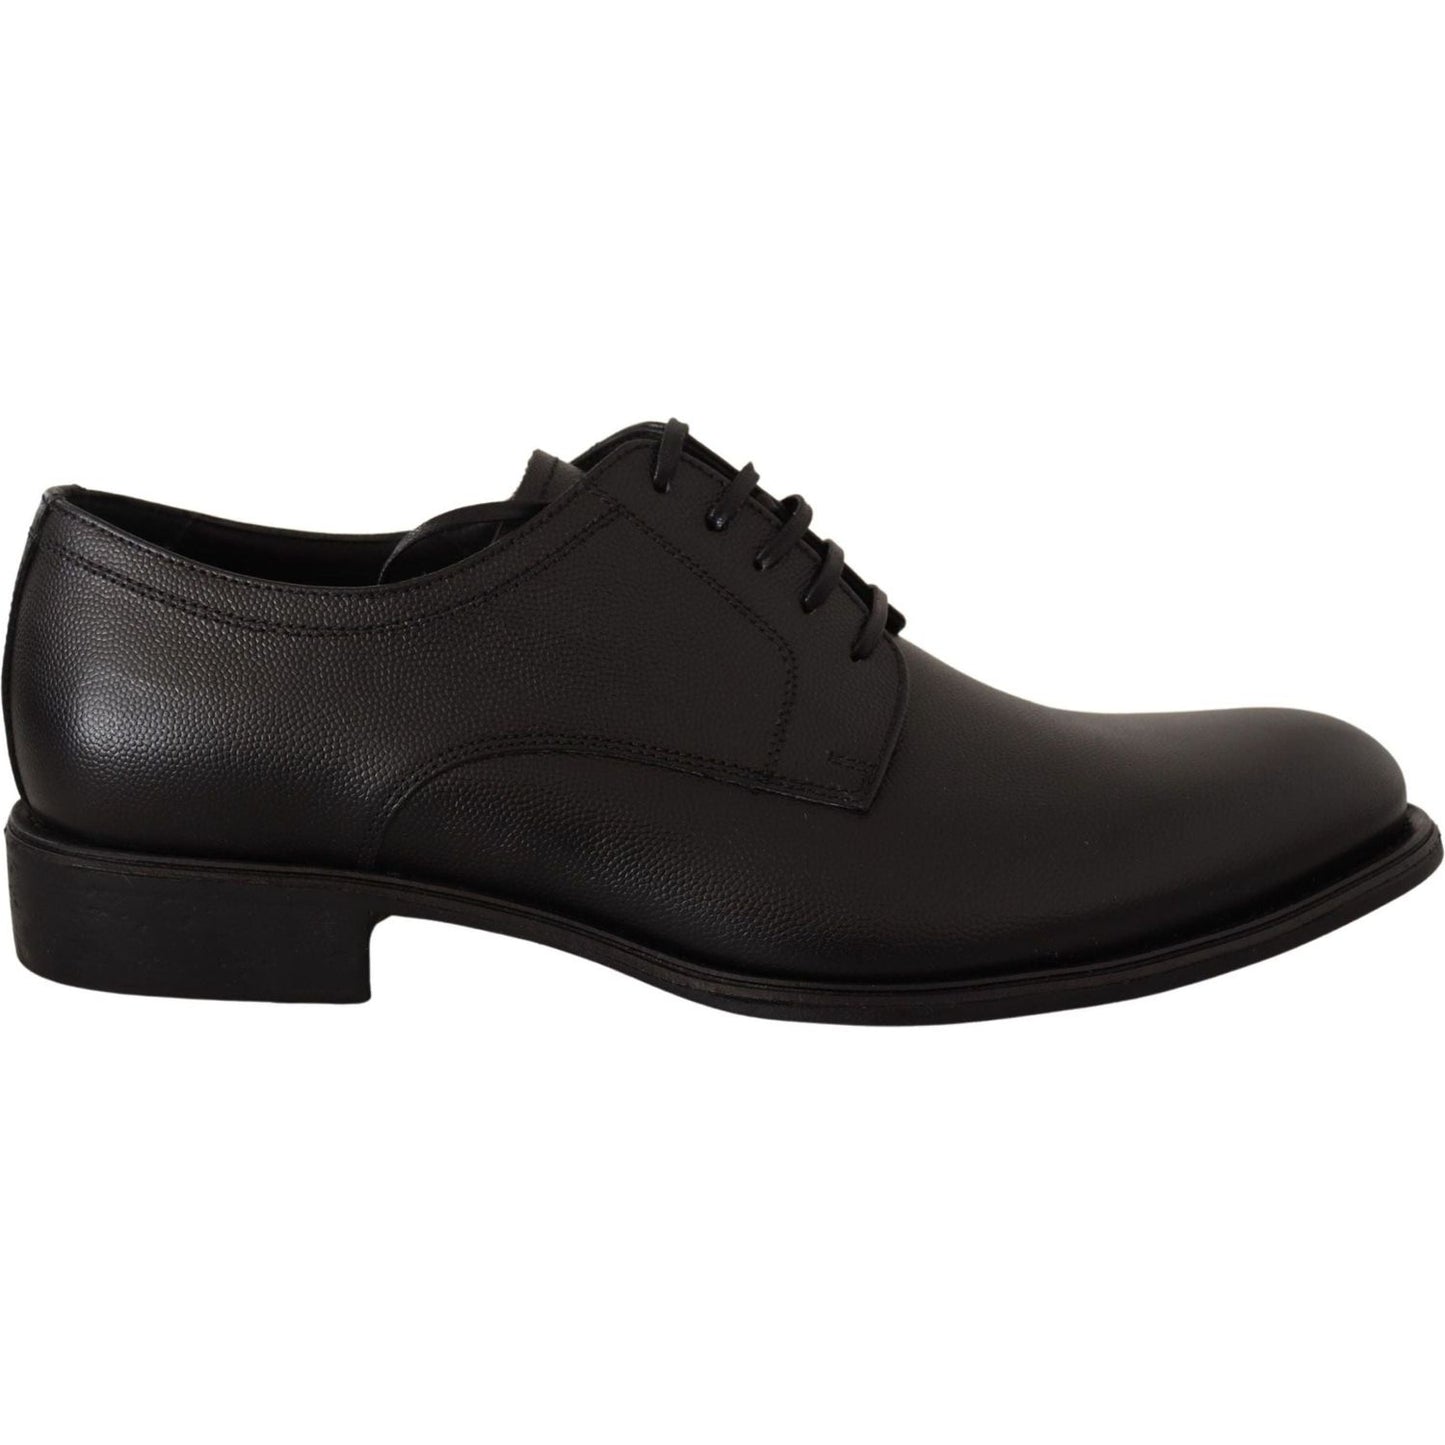 Dolce & Gabbana | Black Leather Lace Up Mens Formal Derby Shoes | 459.00 - McRichard Designer Brands